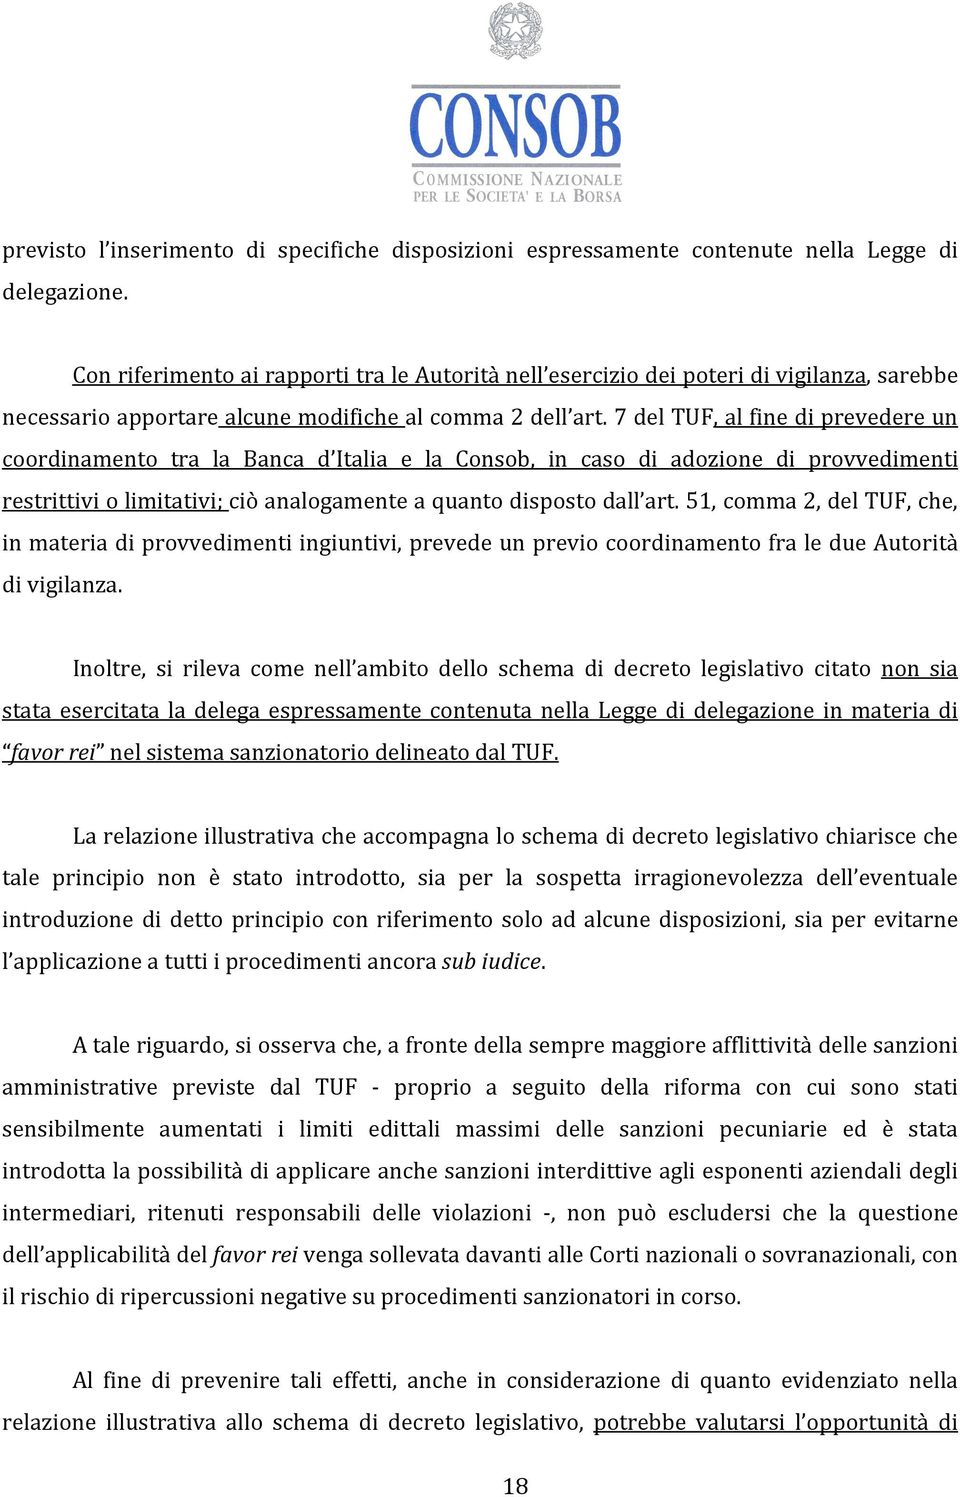 7 del TUF, al fine di prevedere un coordinamento tra la Banca d Italia e la Consob, in caso di adozione di provvedimenti restrittivi o limitativi; ciò analogamente a quanto disposto dall art.